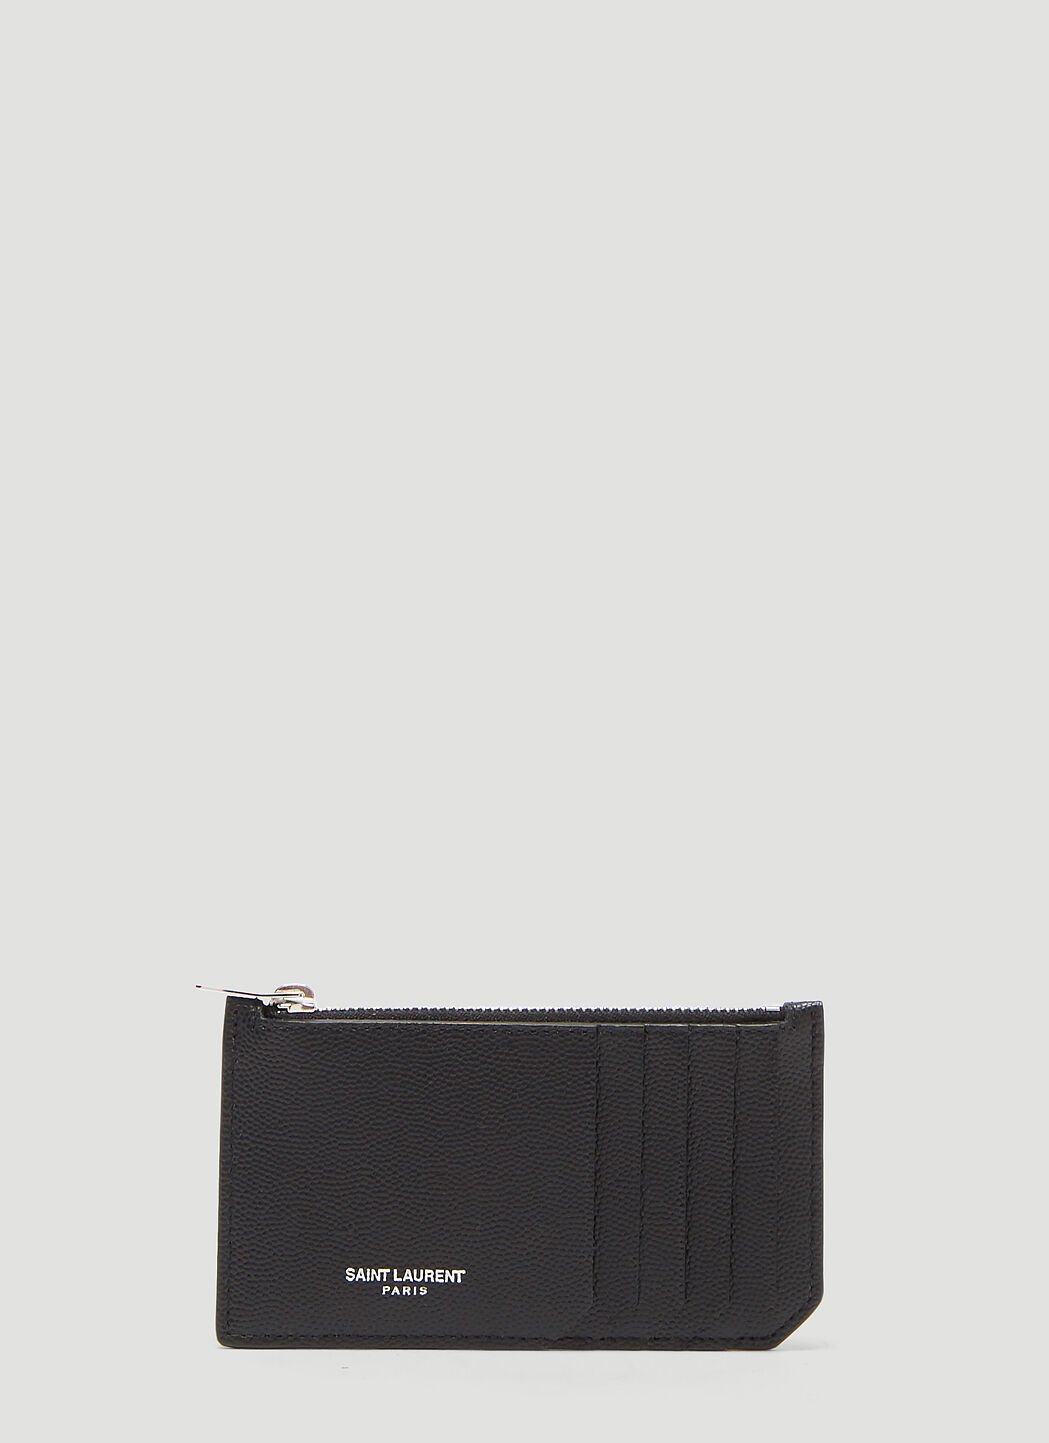 Saint Laurent Fragments Zip Wallet Black sla0136039